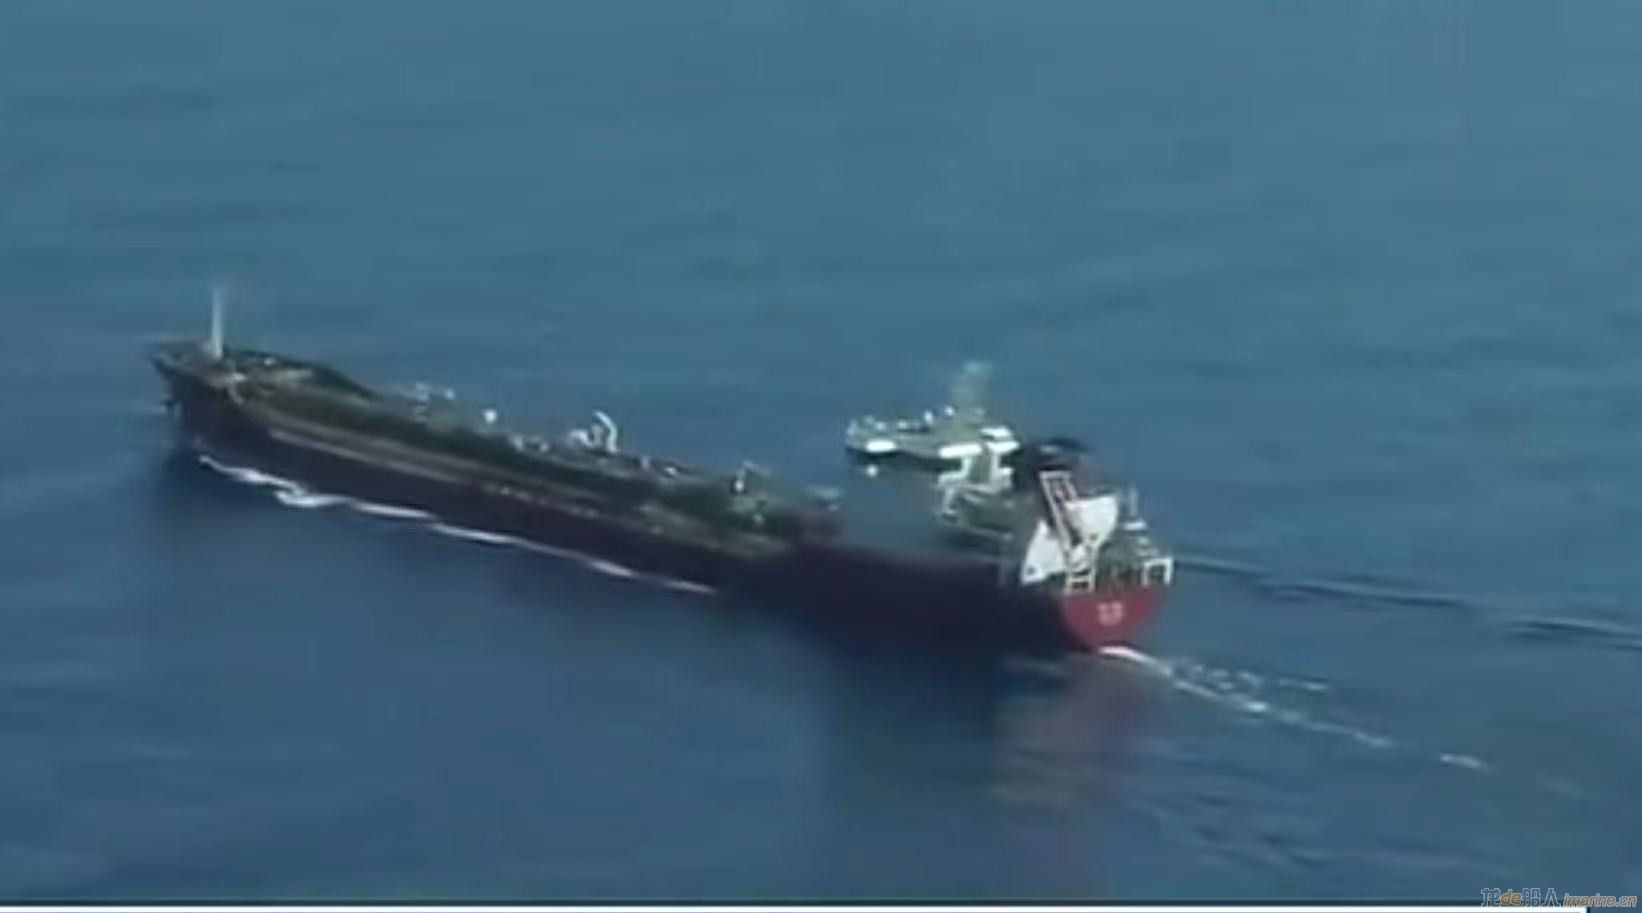 [航运]一艘偷渡船在地中海沉没 约20人死亡或失踪